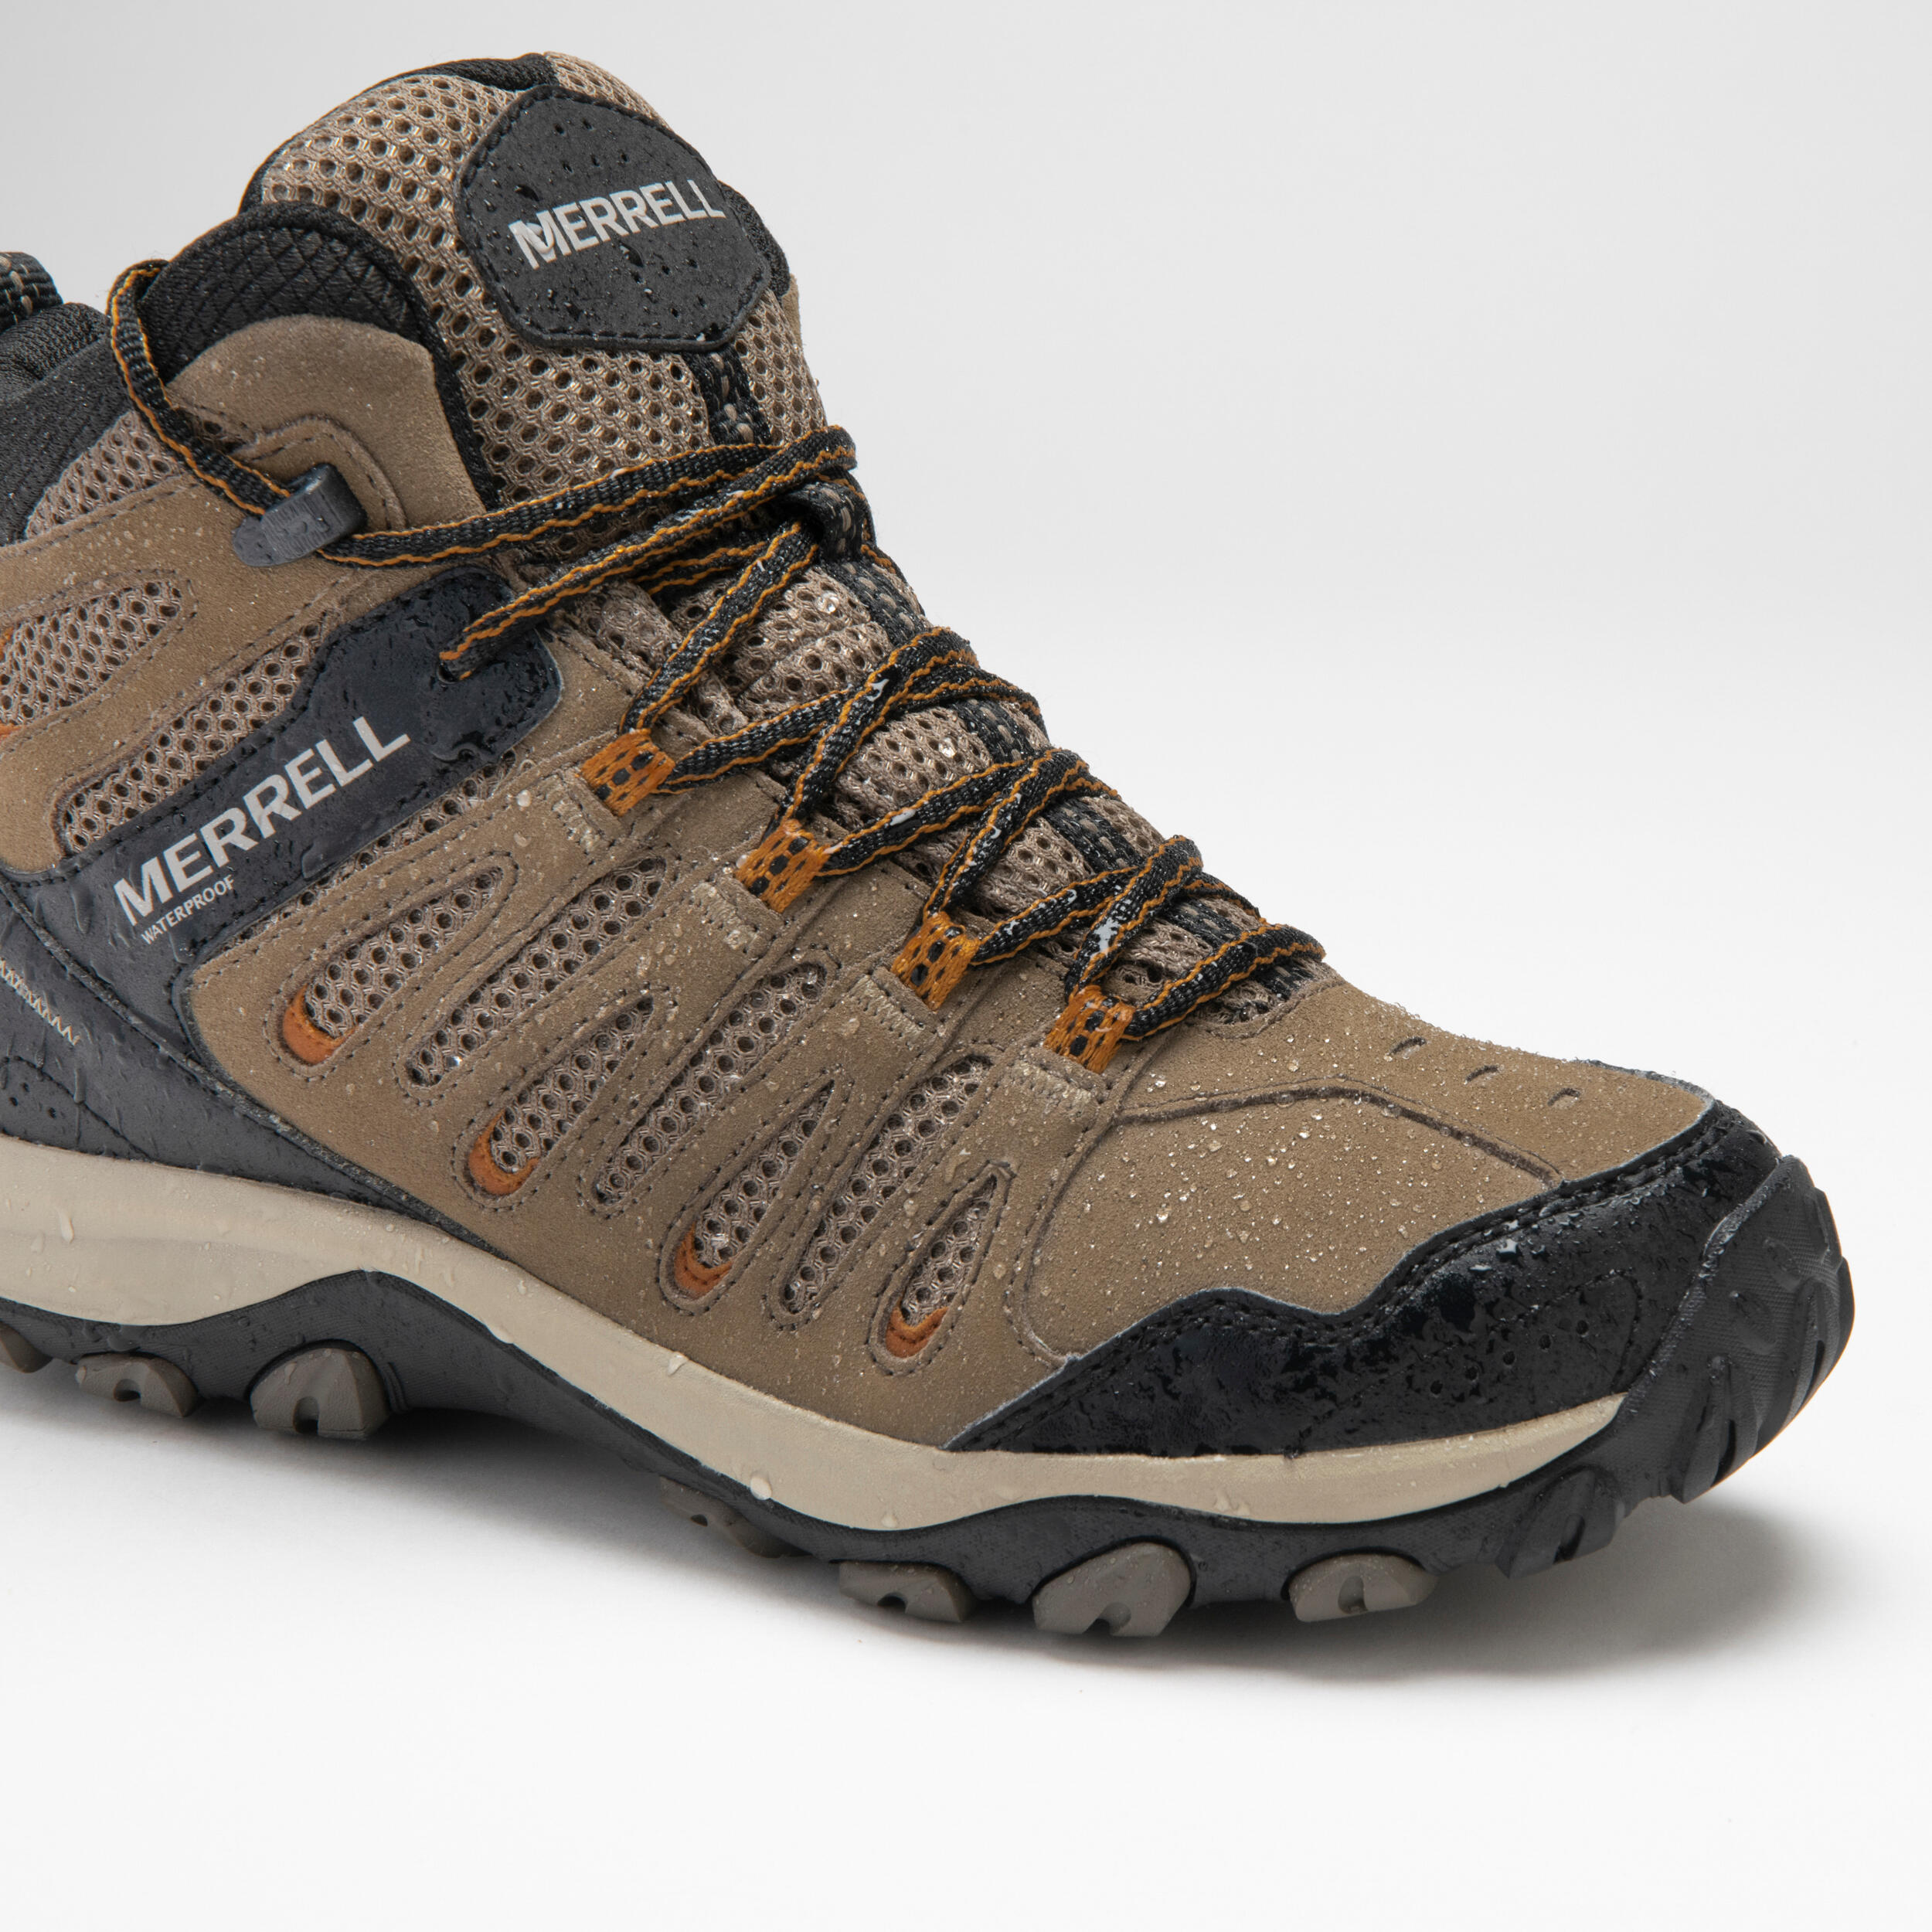 Men's Hiking shoes - MERRELL CROSSLANDER MID WATERPROOF  5/5